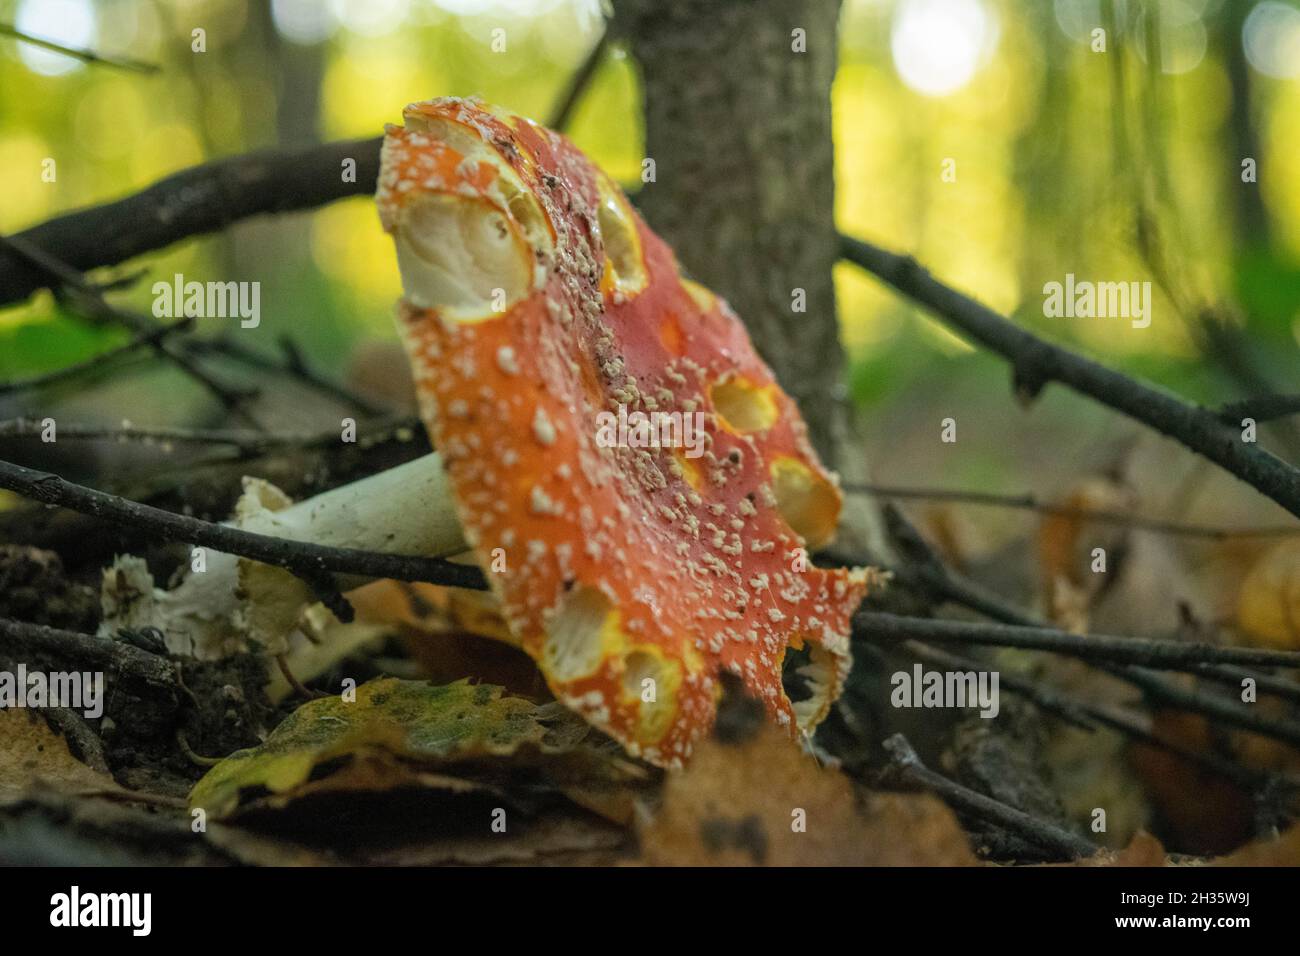 Un champignon toxique et hallucinogène Fly agaric dans l'herbe contre le fond d'une forêt d'automne.Gros plan sur les champignons toxiques rouges dans la nat Banque D'Images